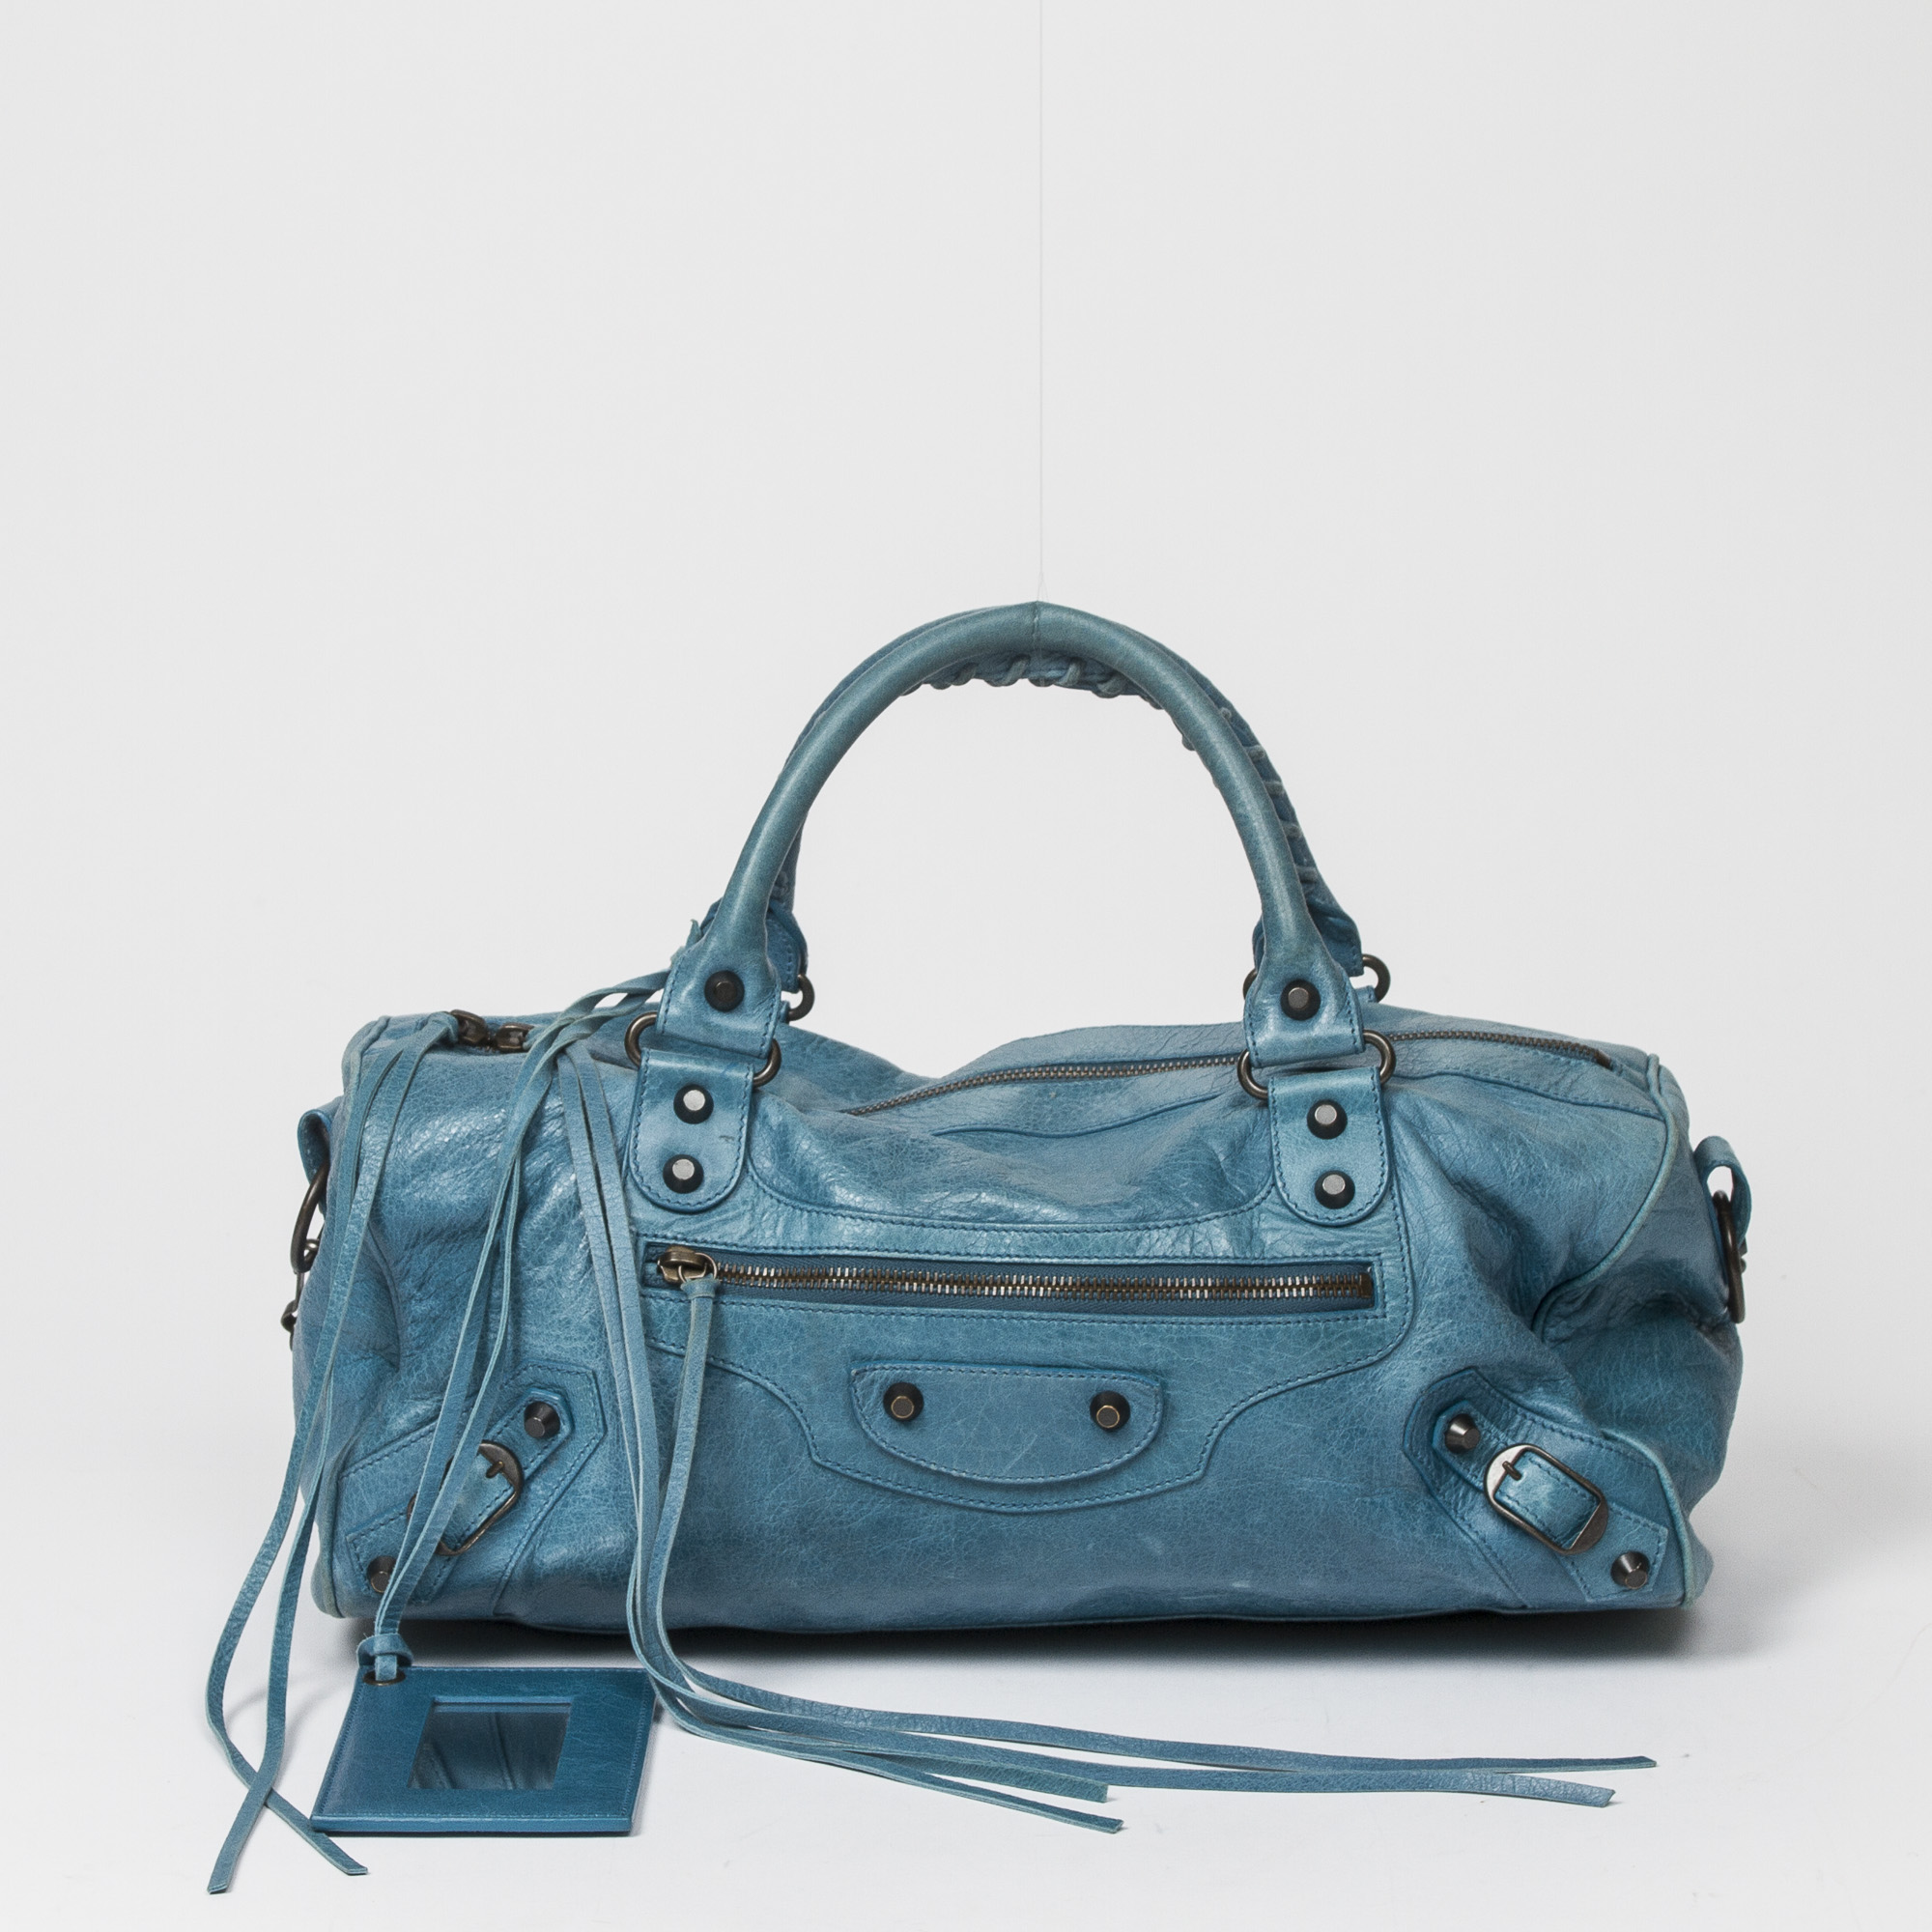 Balenciaga Small B Bag in Turquoise